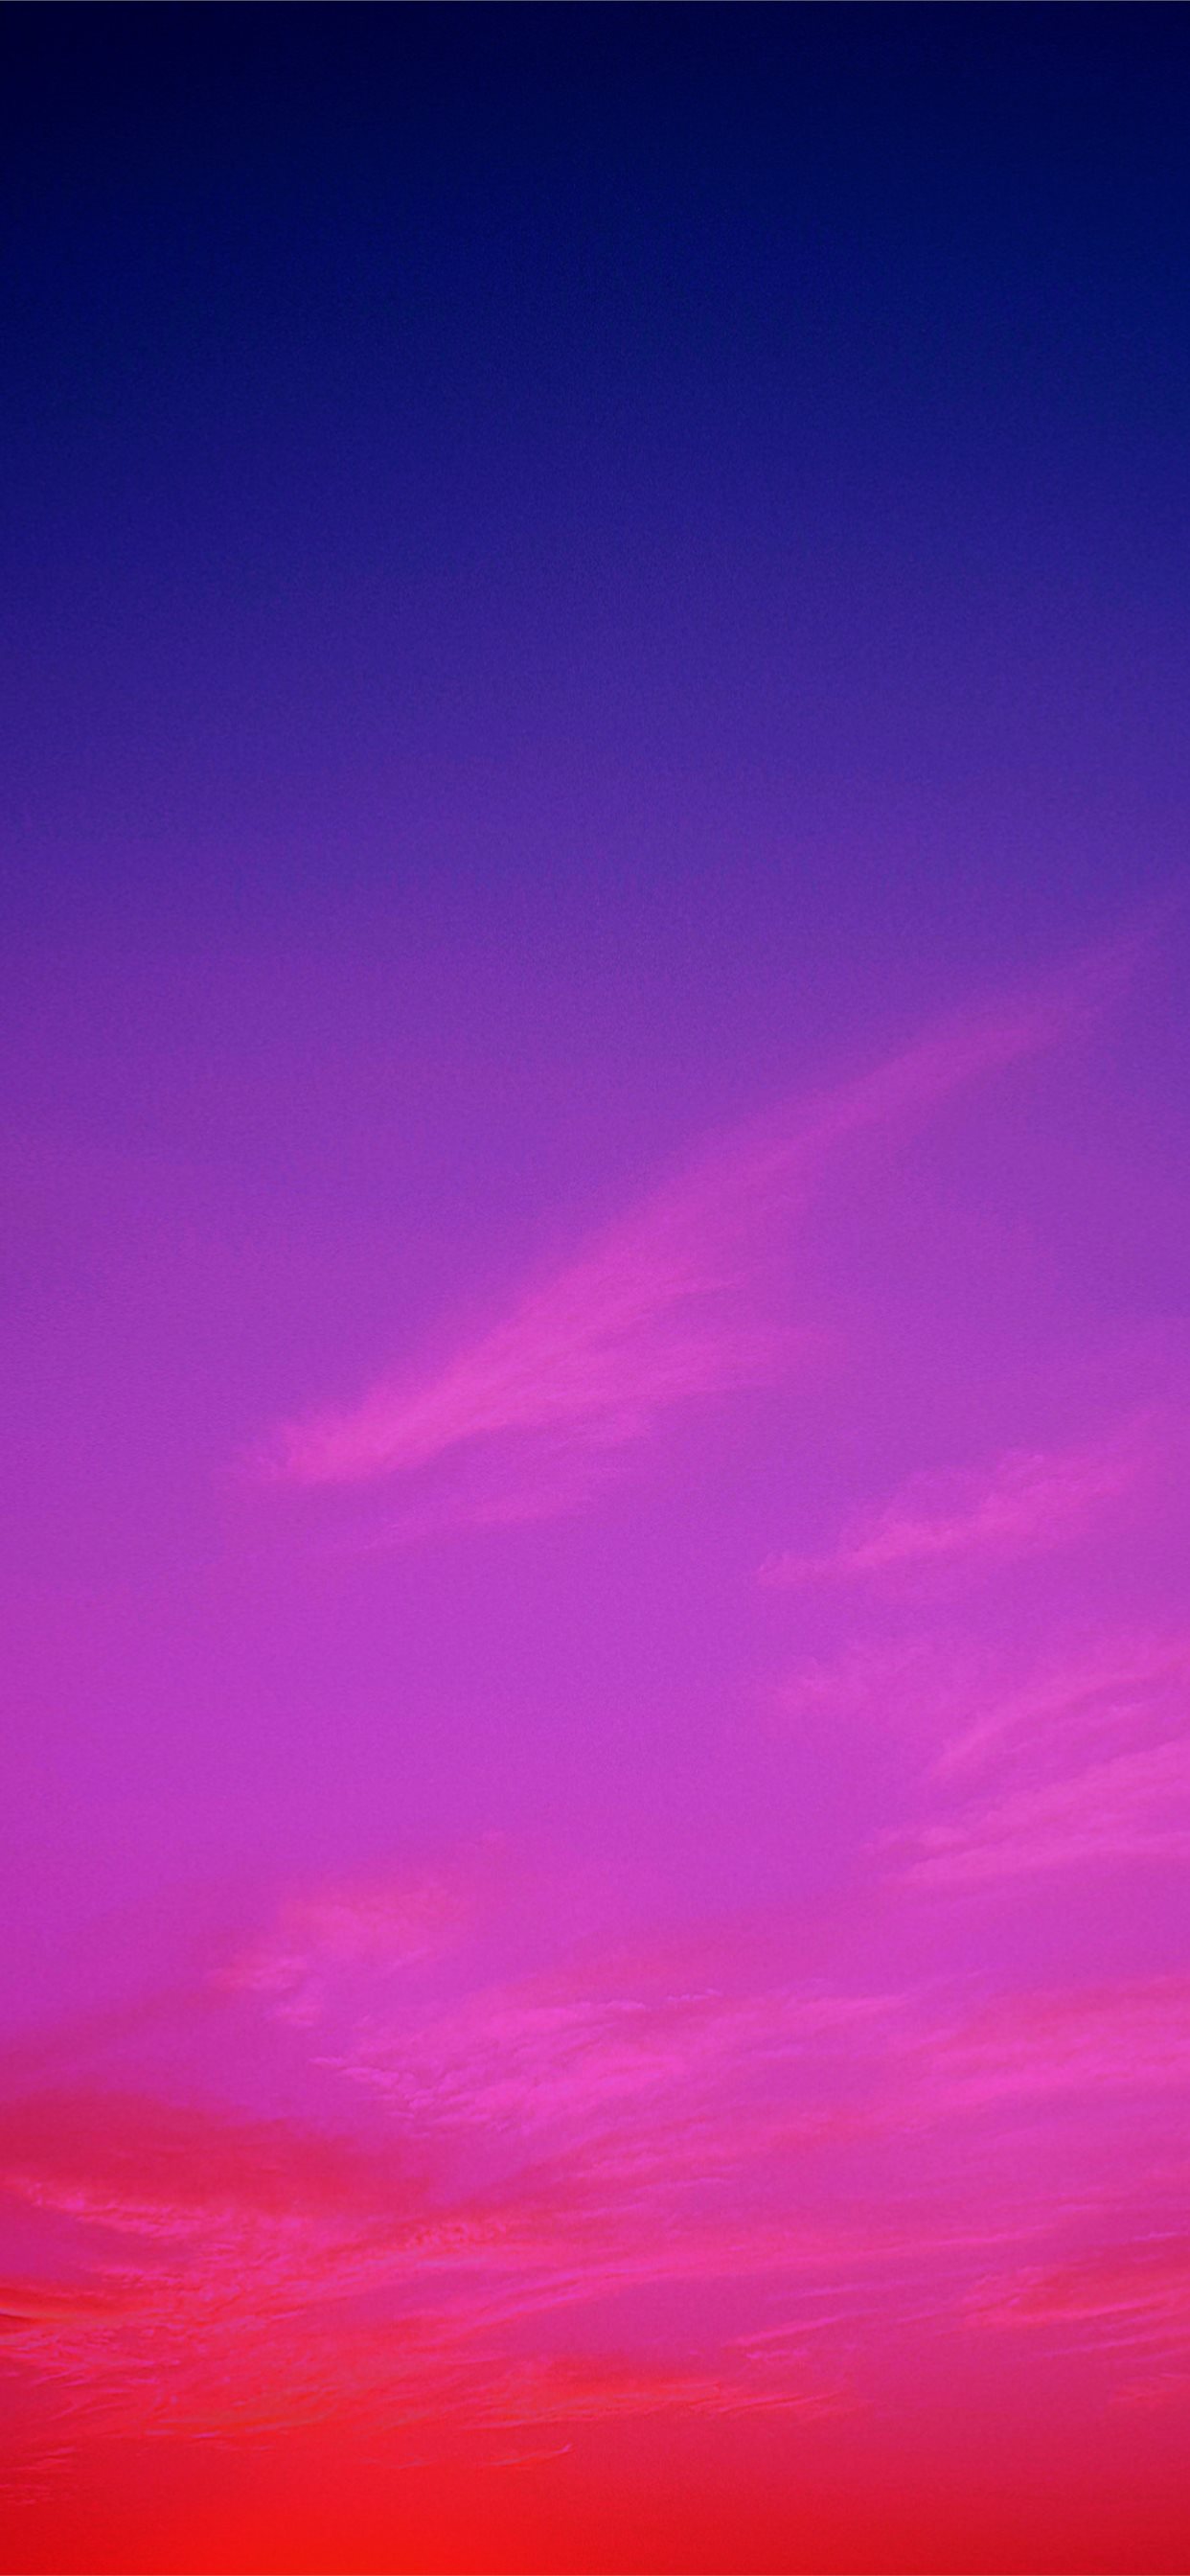 Hình nền tím bầu trời miễn phí cho iPhone 11 là dòng họa tuyệt đẹp, kết hợp giữa màu tím và một bầu trời đầy sao trong đêm tối. Hình nền tím bầu trời miễn phí cho iPhone 11 mang lại nguồn cảm hứng kỳ diệu cho bạn để khuyến khích sự sáng tạo và suy nghĩ.